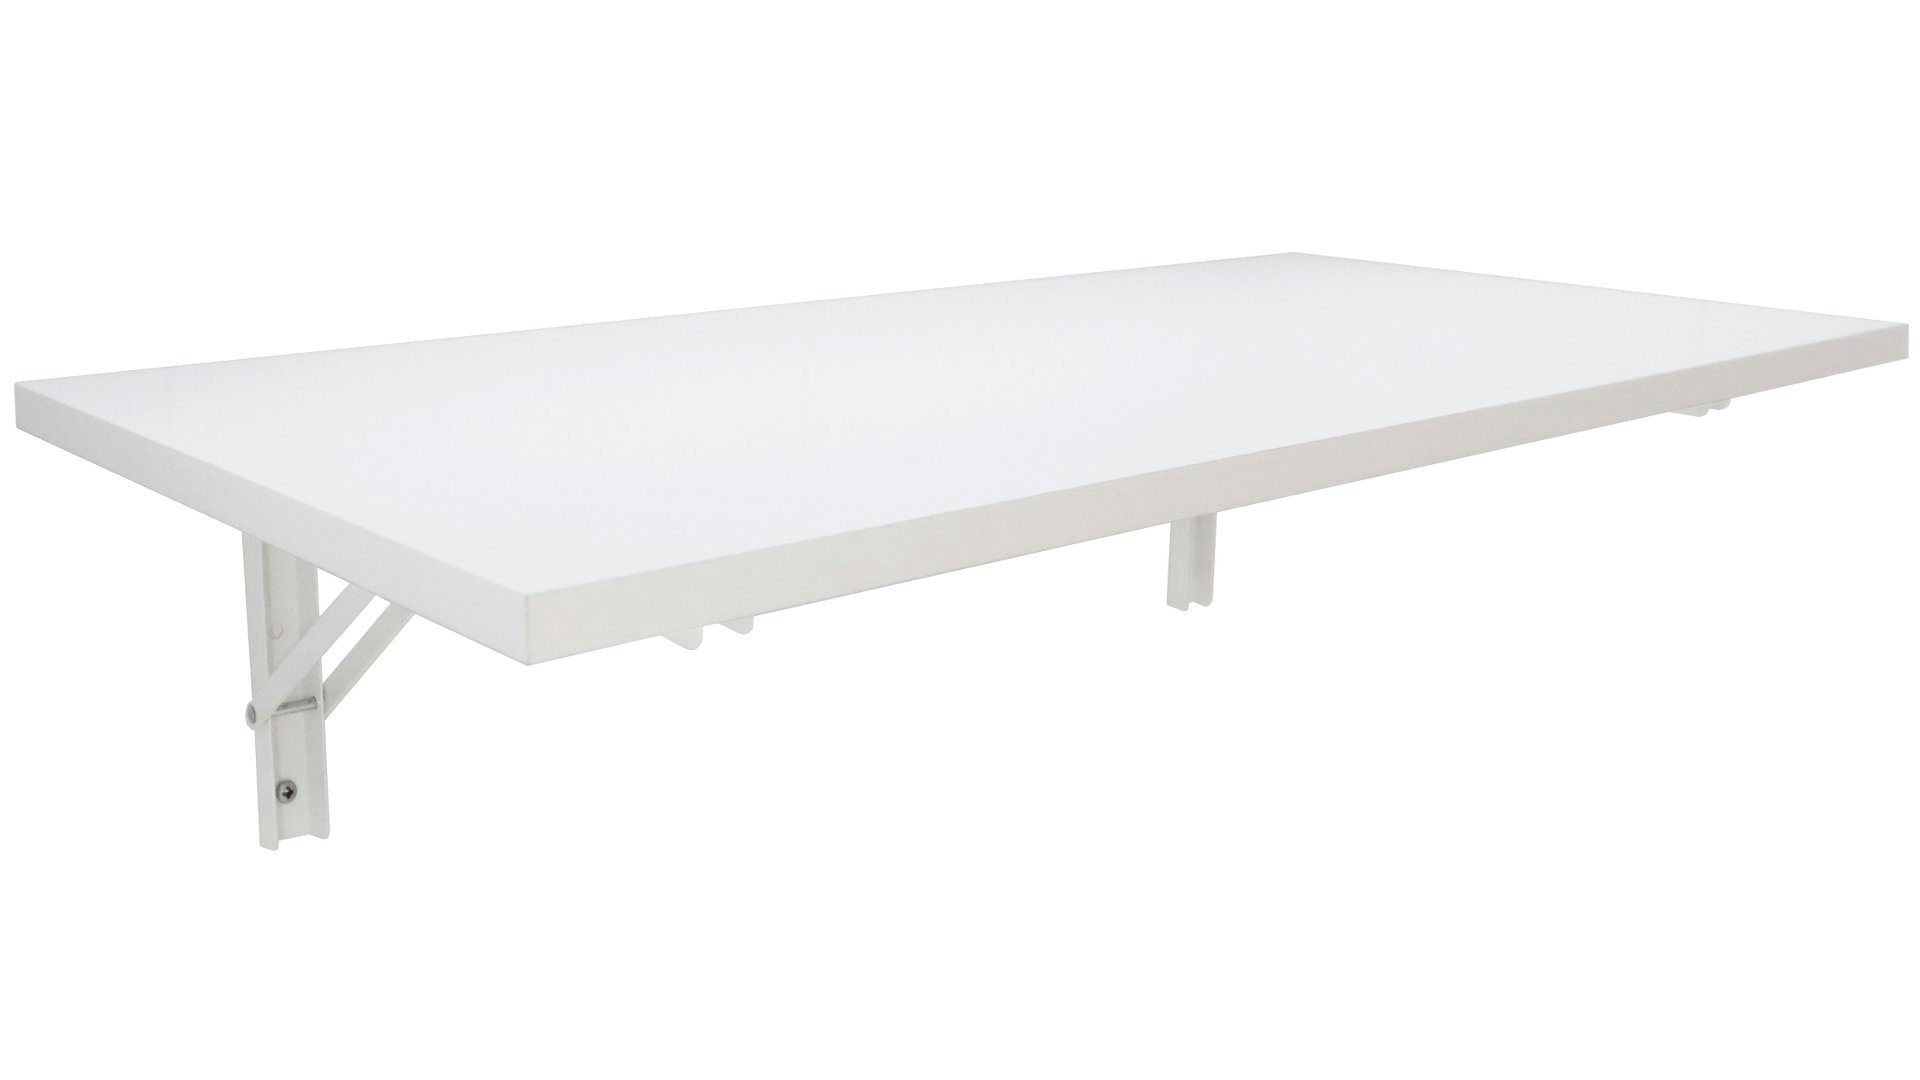 Wandklapptisch Wandtisch Tisch Klapptisch Regal Ablage Küchentisch weiß 